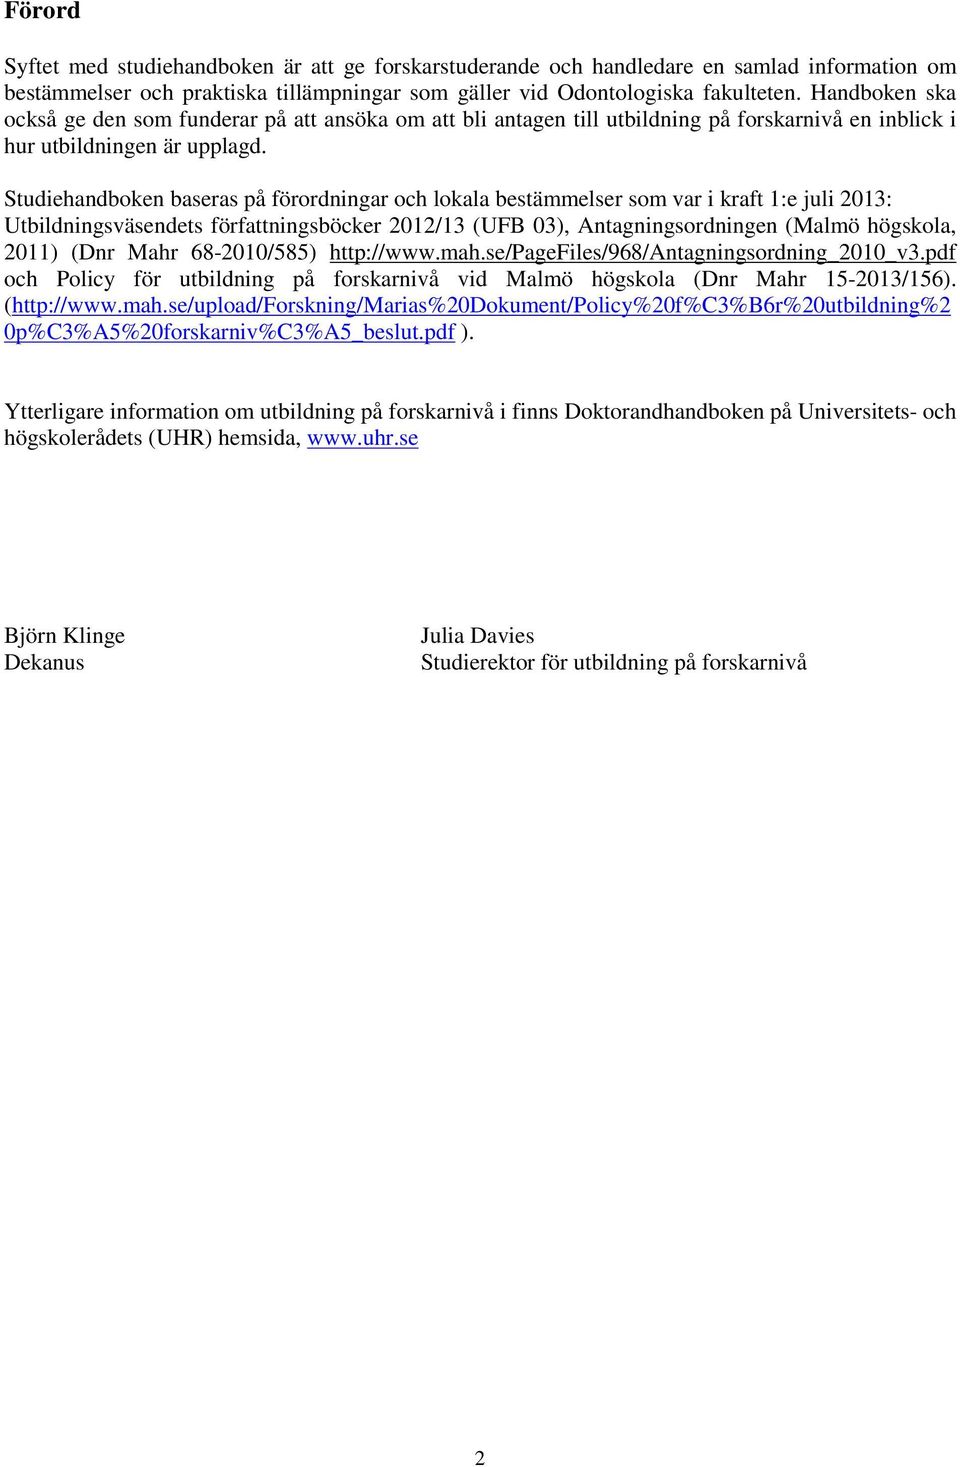 Studiehandboken baseras på förordningar och lokala bestämmelser som var i kraft 1:e juli 2013: Utbildningsväsendets författningsböcker 2012/13 (UFB 03), Antagningsordningen (Malmö högskola, 2011)